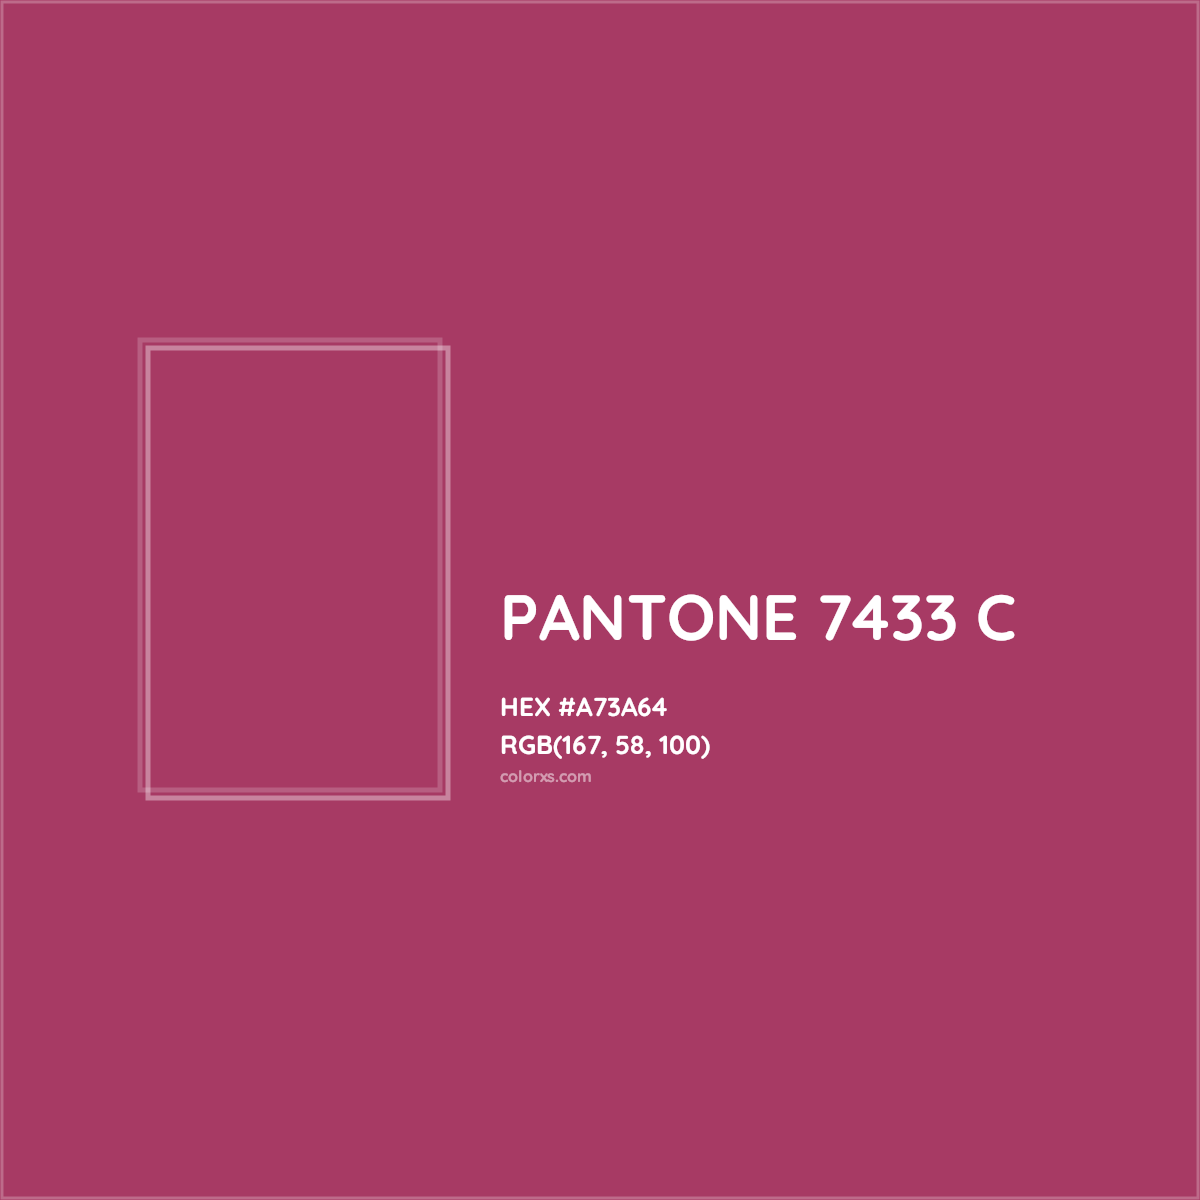 HEX #A73A64 PANTONE 7433 C CMS Pantone PMS - Color Code